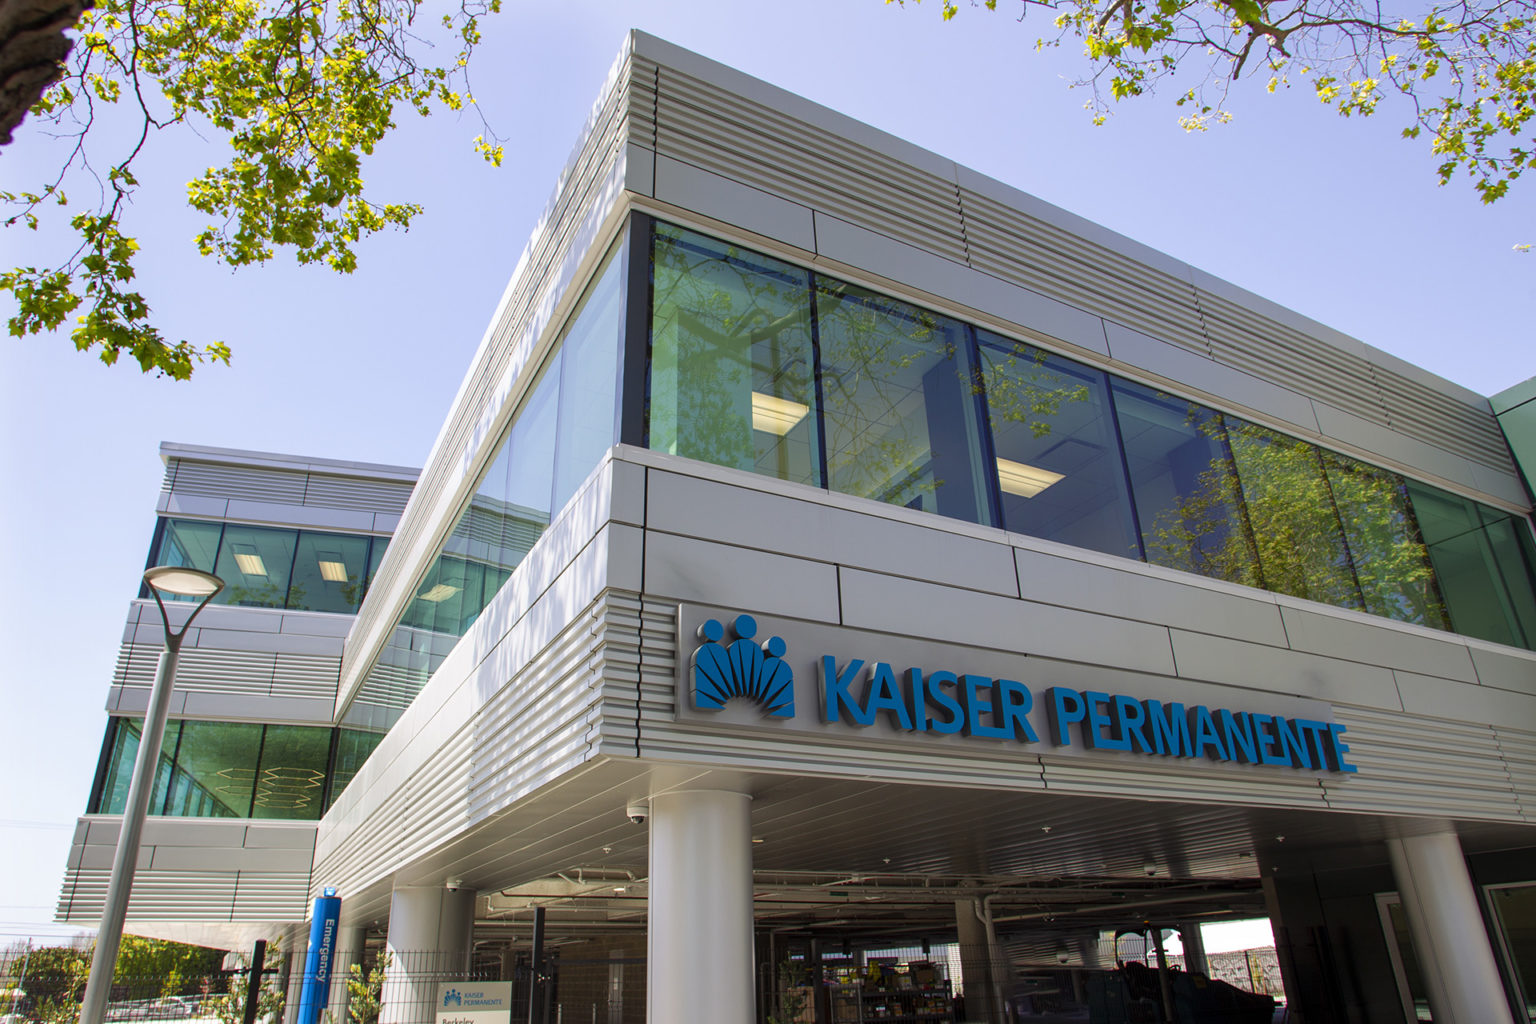 New Kaiser Permanente medical offices open in Berkeley Kaiser